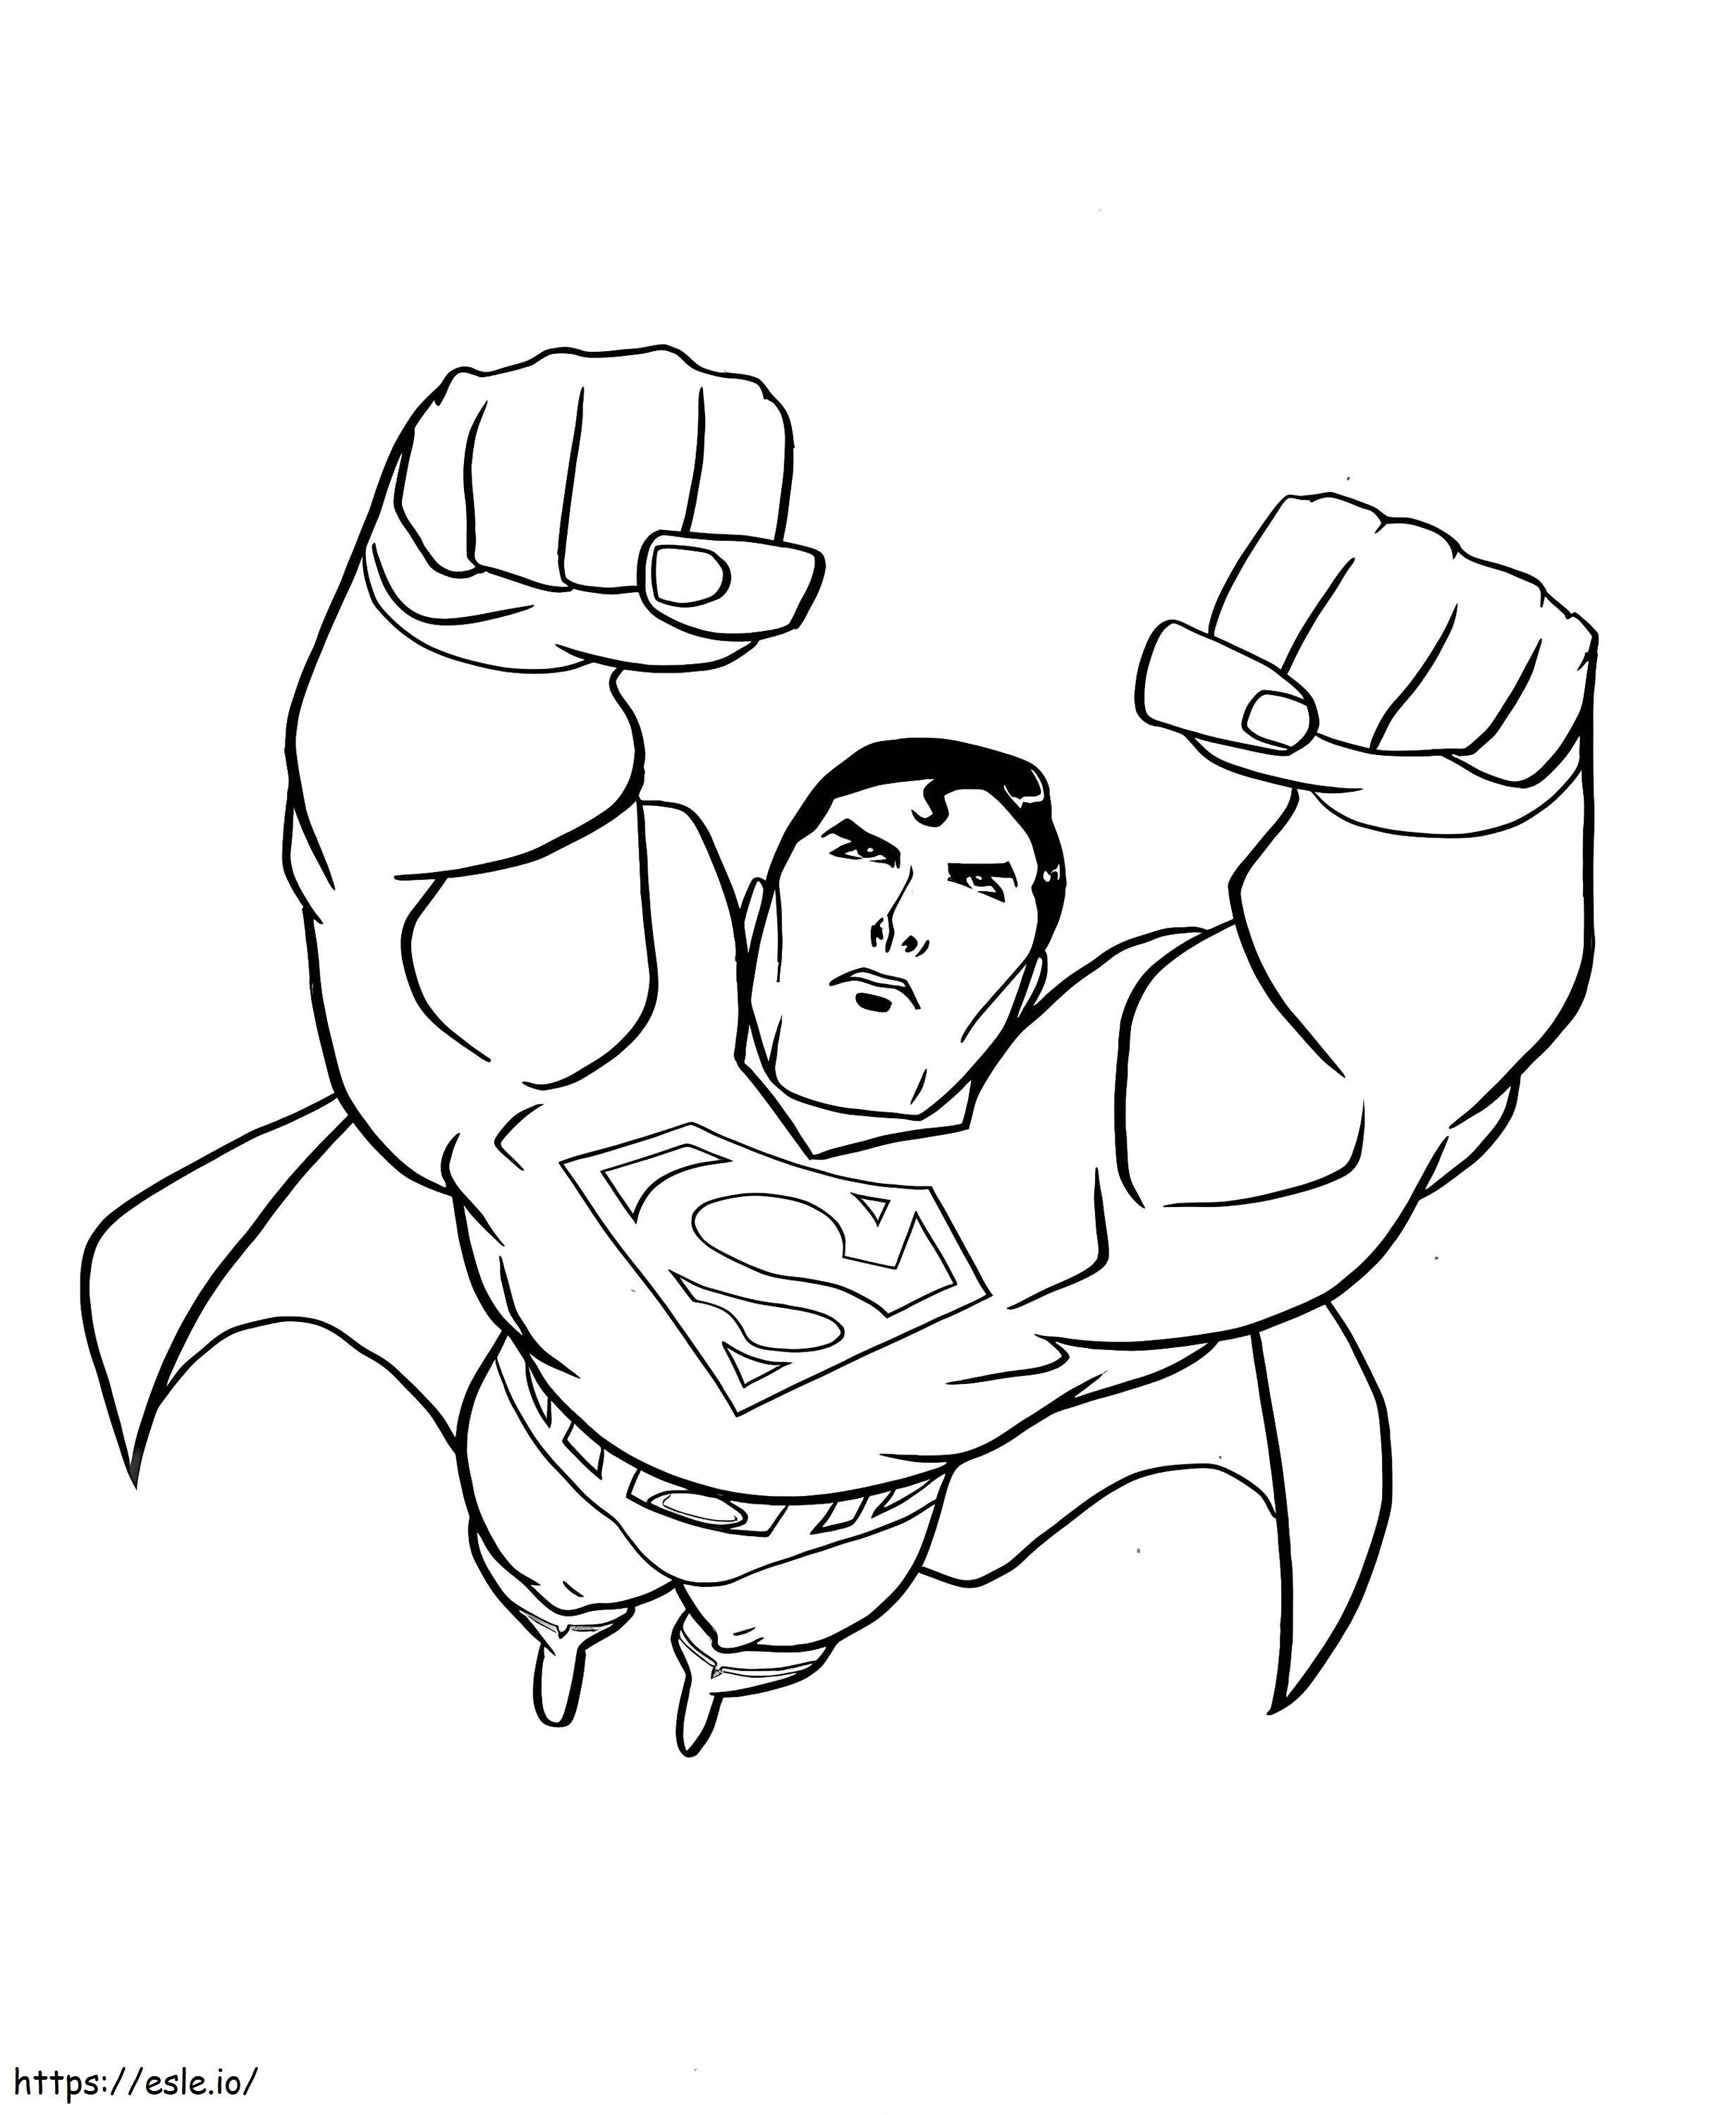 héroe superman para colorear